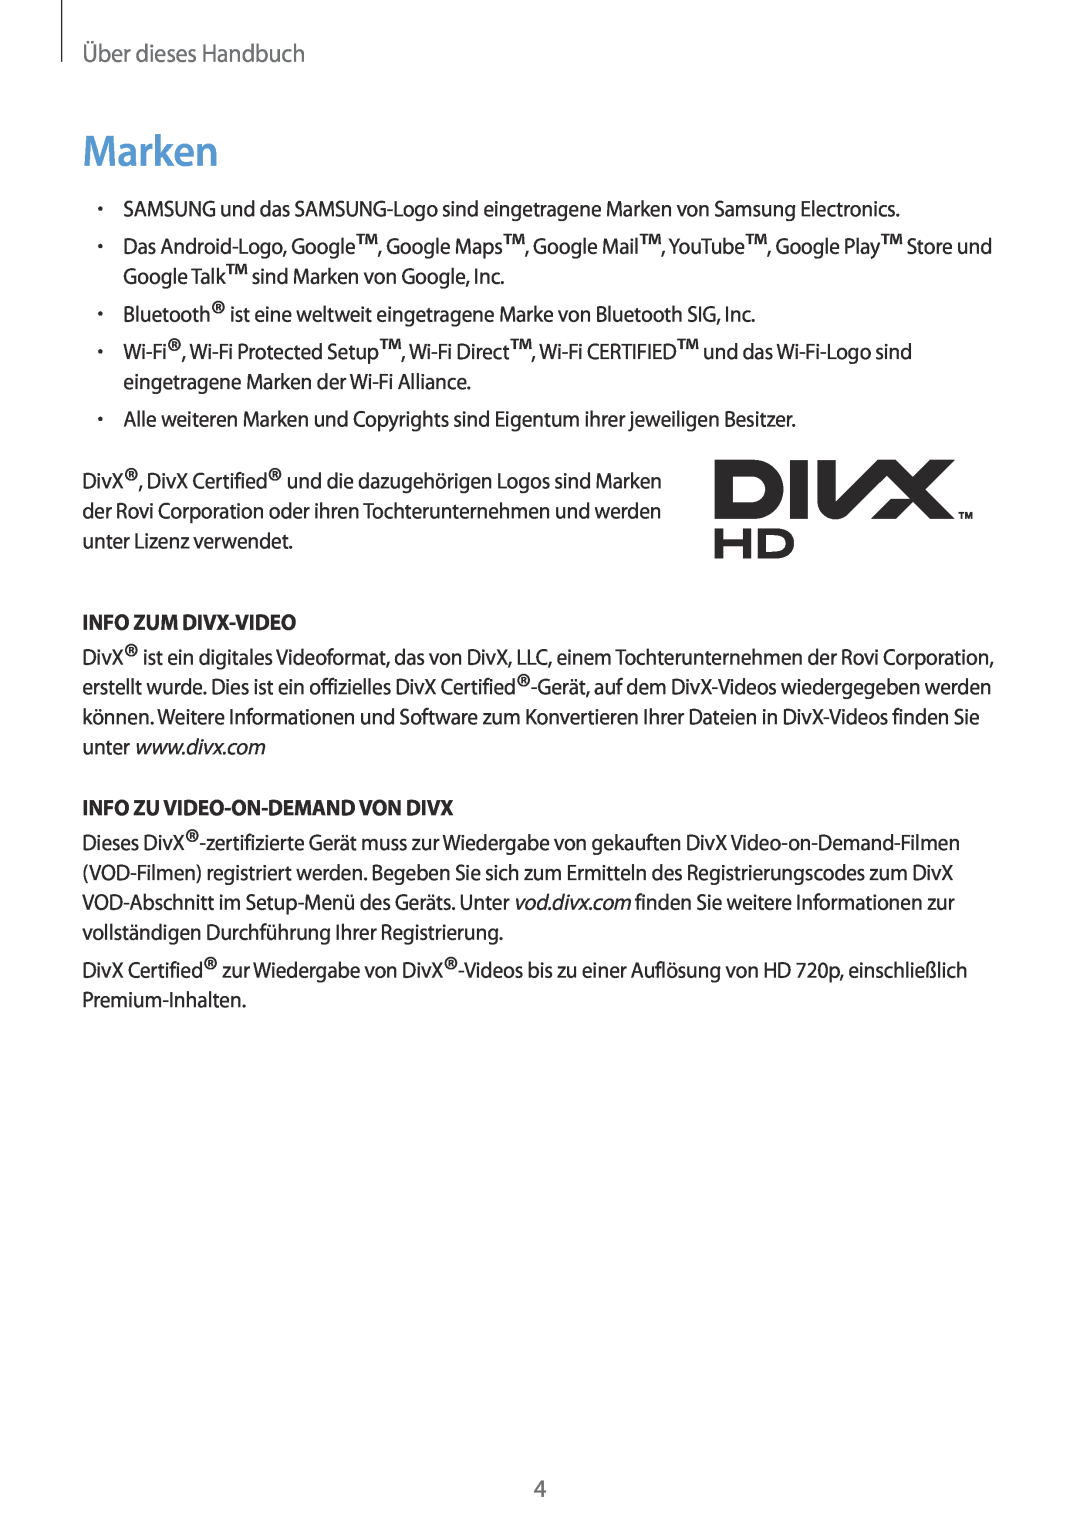 Samsung GT-N7100RWDTPH, GT-N7100ZNDTUR Marken, Info Zum Divx-Video, Info Zu Video-On-Demand Von Divx, Über dieses Handbuch 